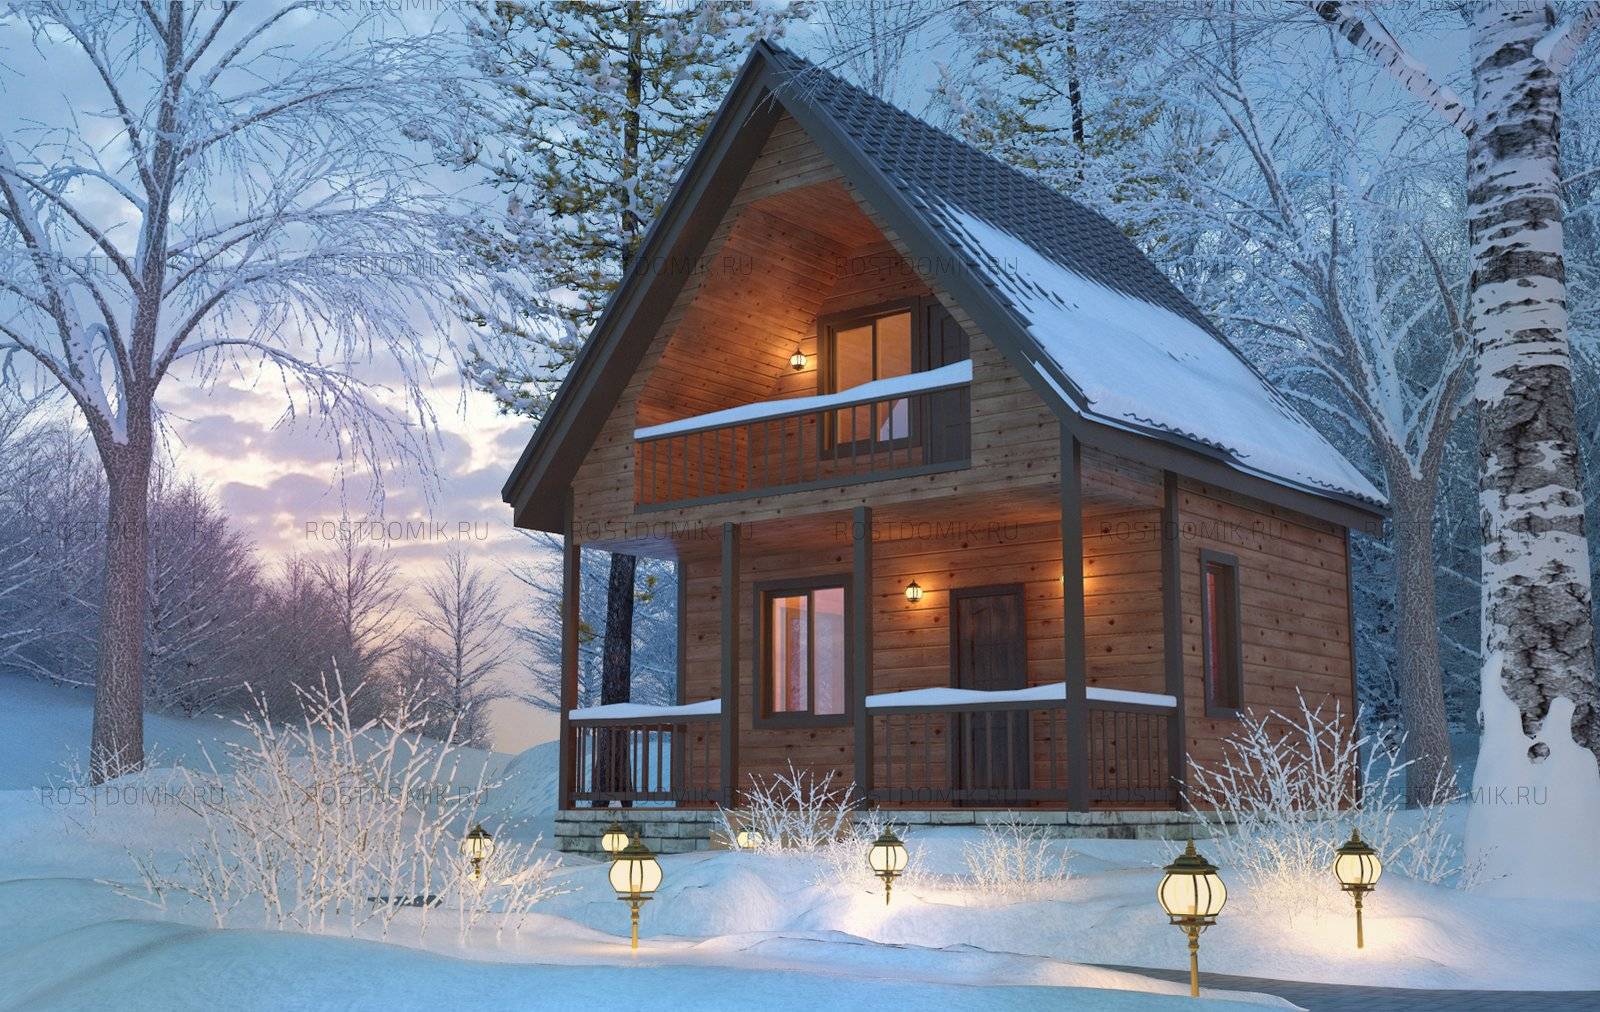 Зимний каркасный дом: можно ли использовать его для зимнего проживания, отзывы